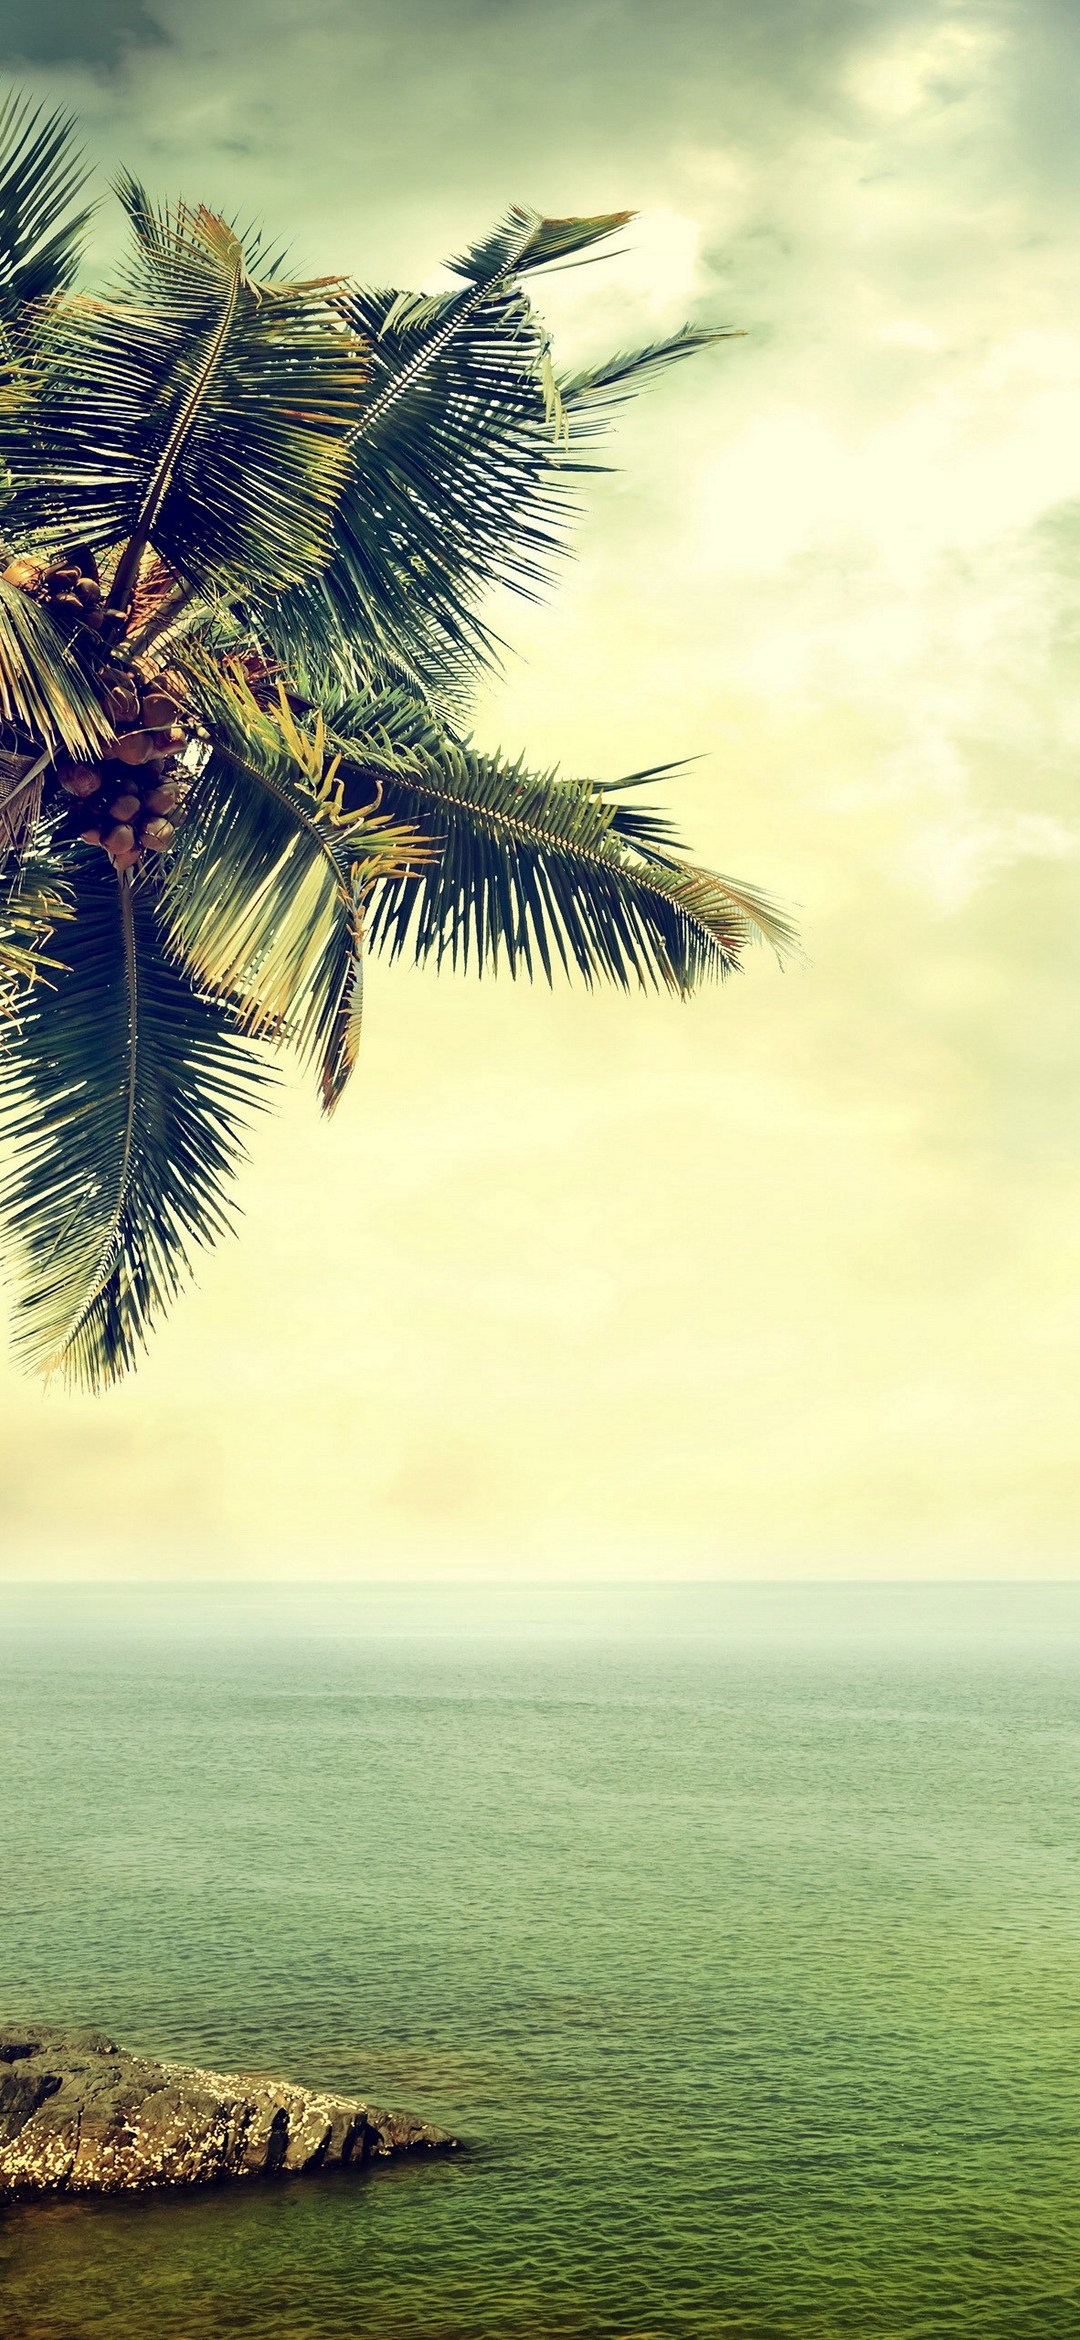 椰子の木 緑の空と静かな海 Redmagic 5 Android スマホ壁紙 待ち受け スマラン